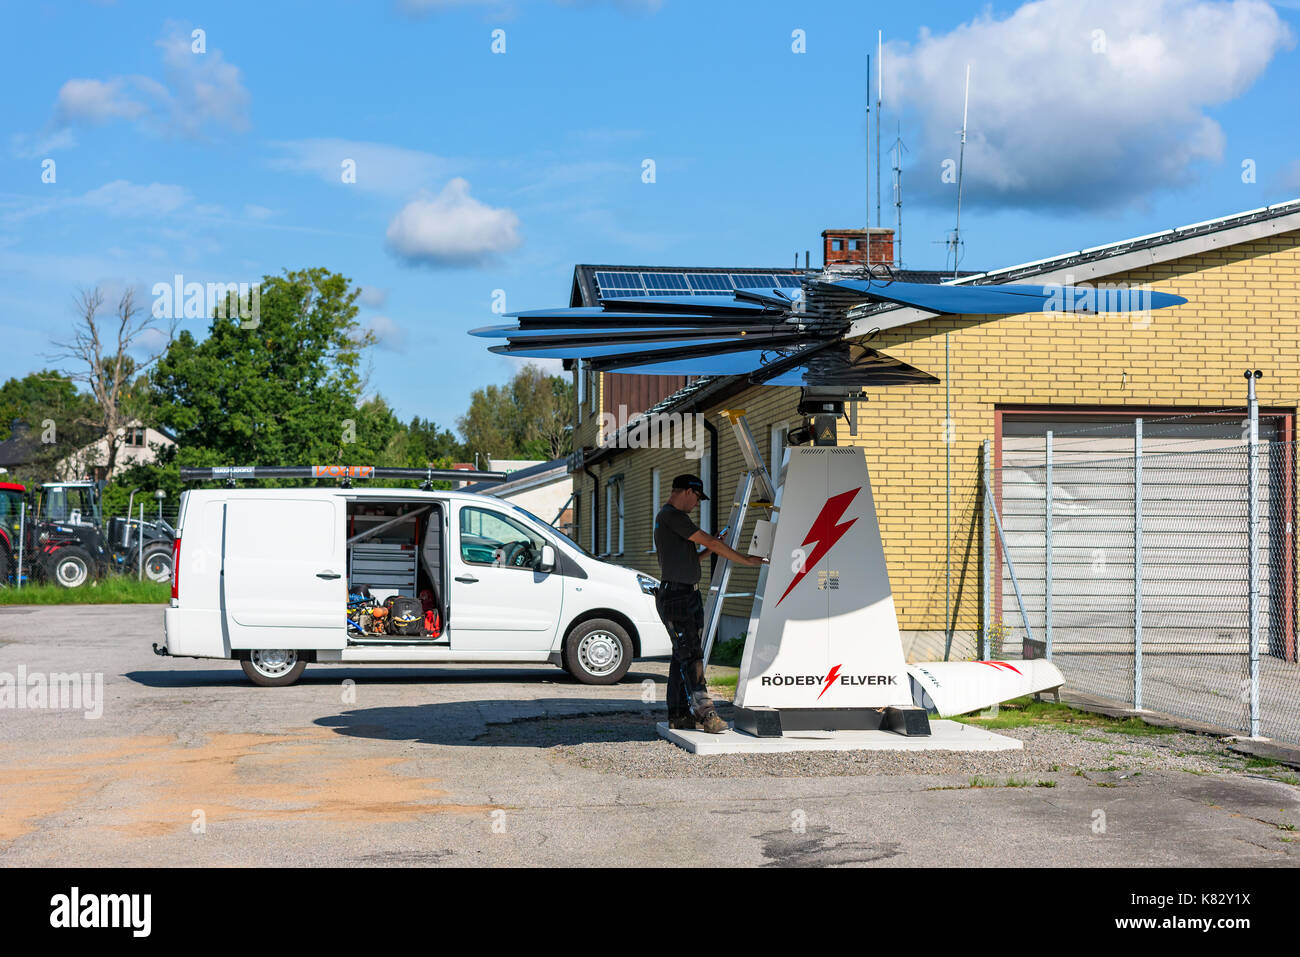 Karlskrona, Suecia - 28 de agosto de 2017: documental de la vida real de trabajo técnico sobre seguimiento solar smartflower estación de energía solar, ventiladores levantó por acc Foto de stock